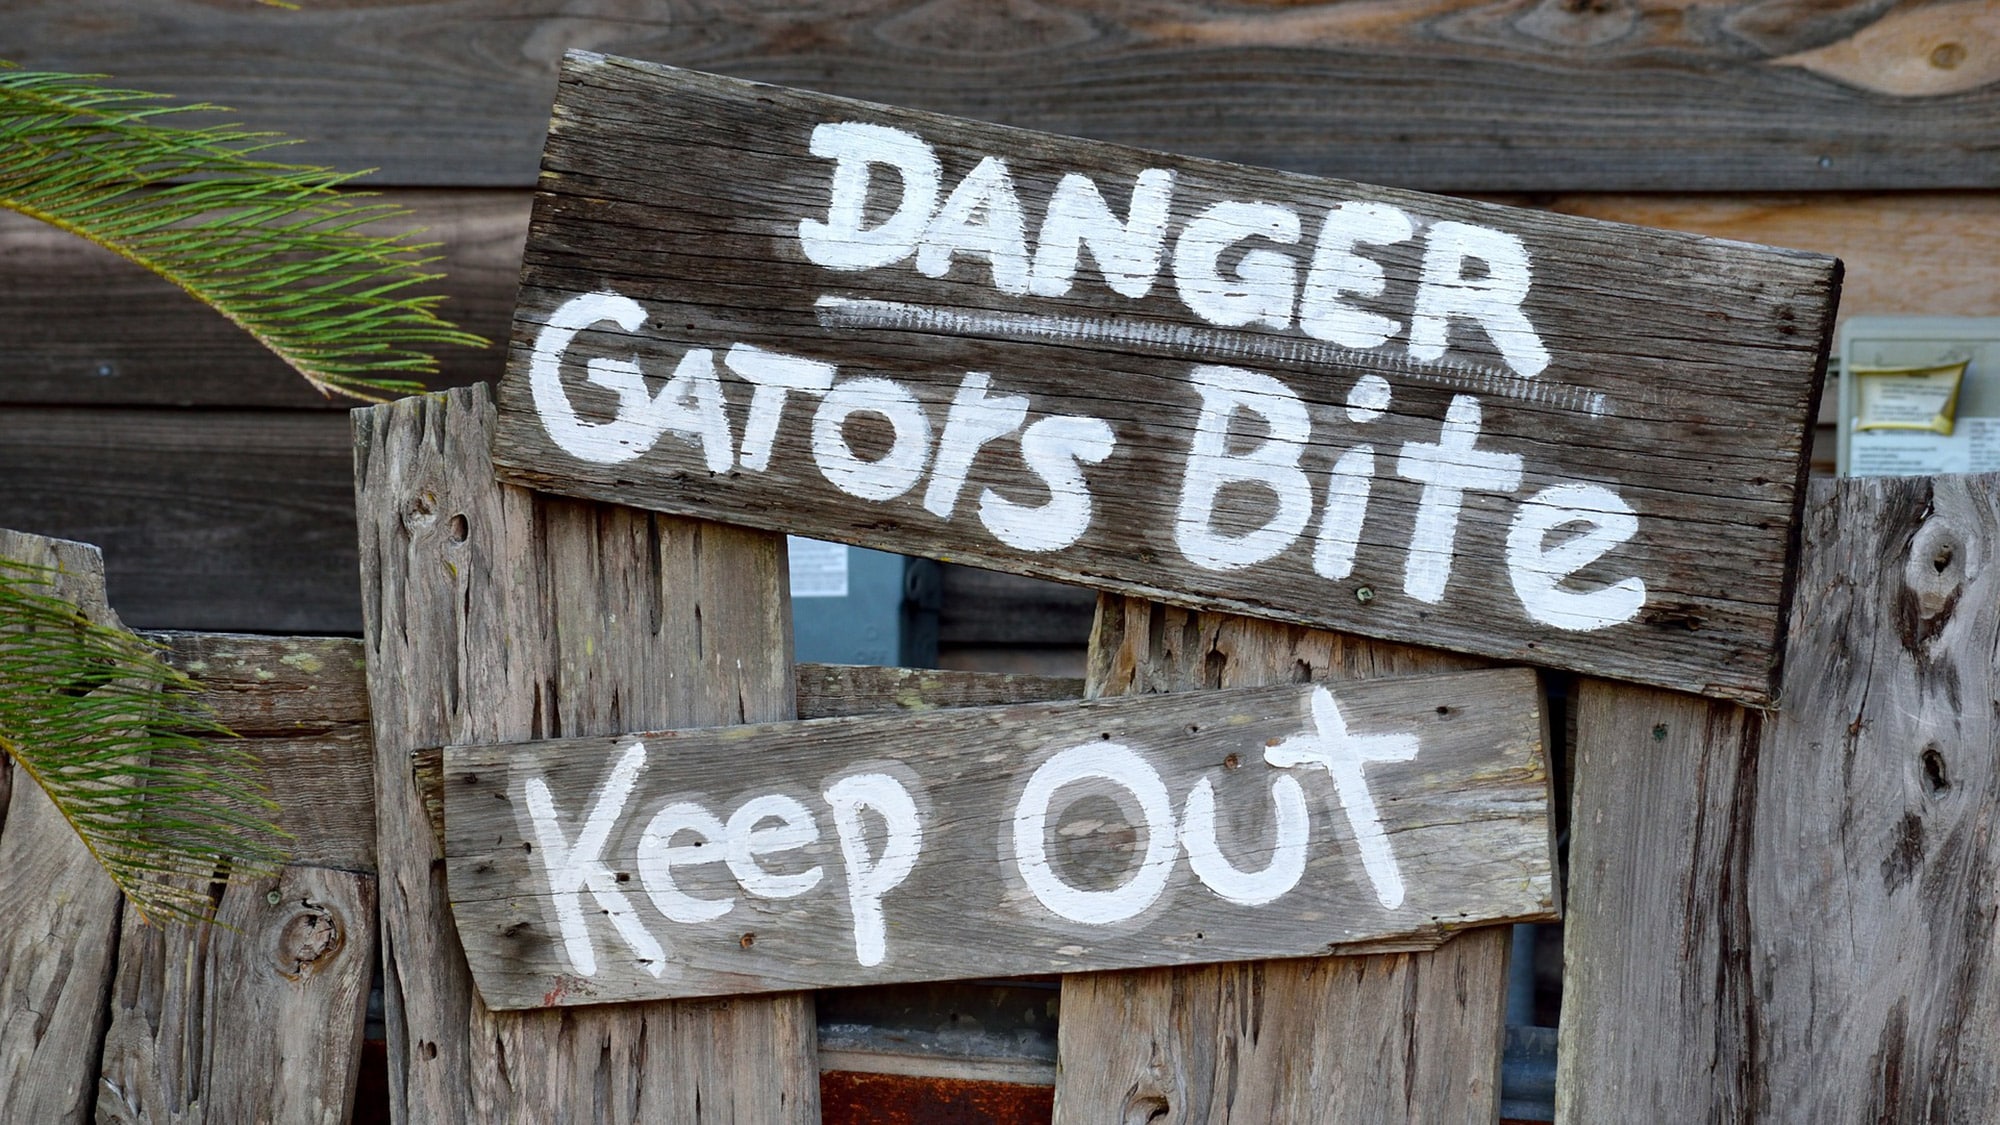 Gators are plentiful in Florida, but shark bites are more common.